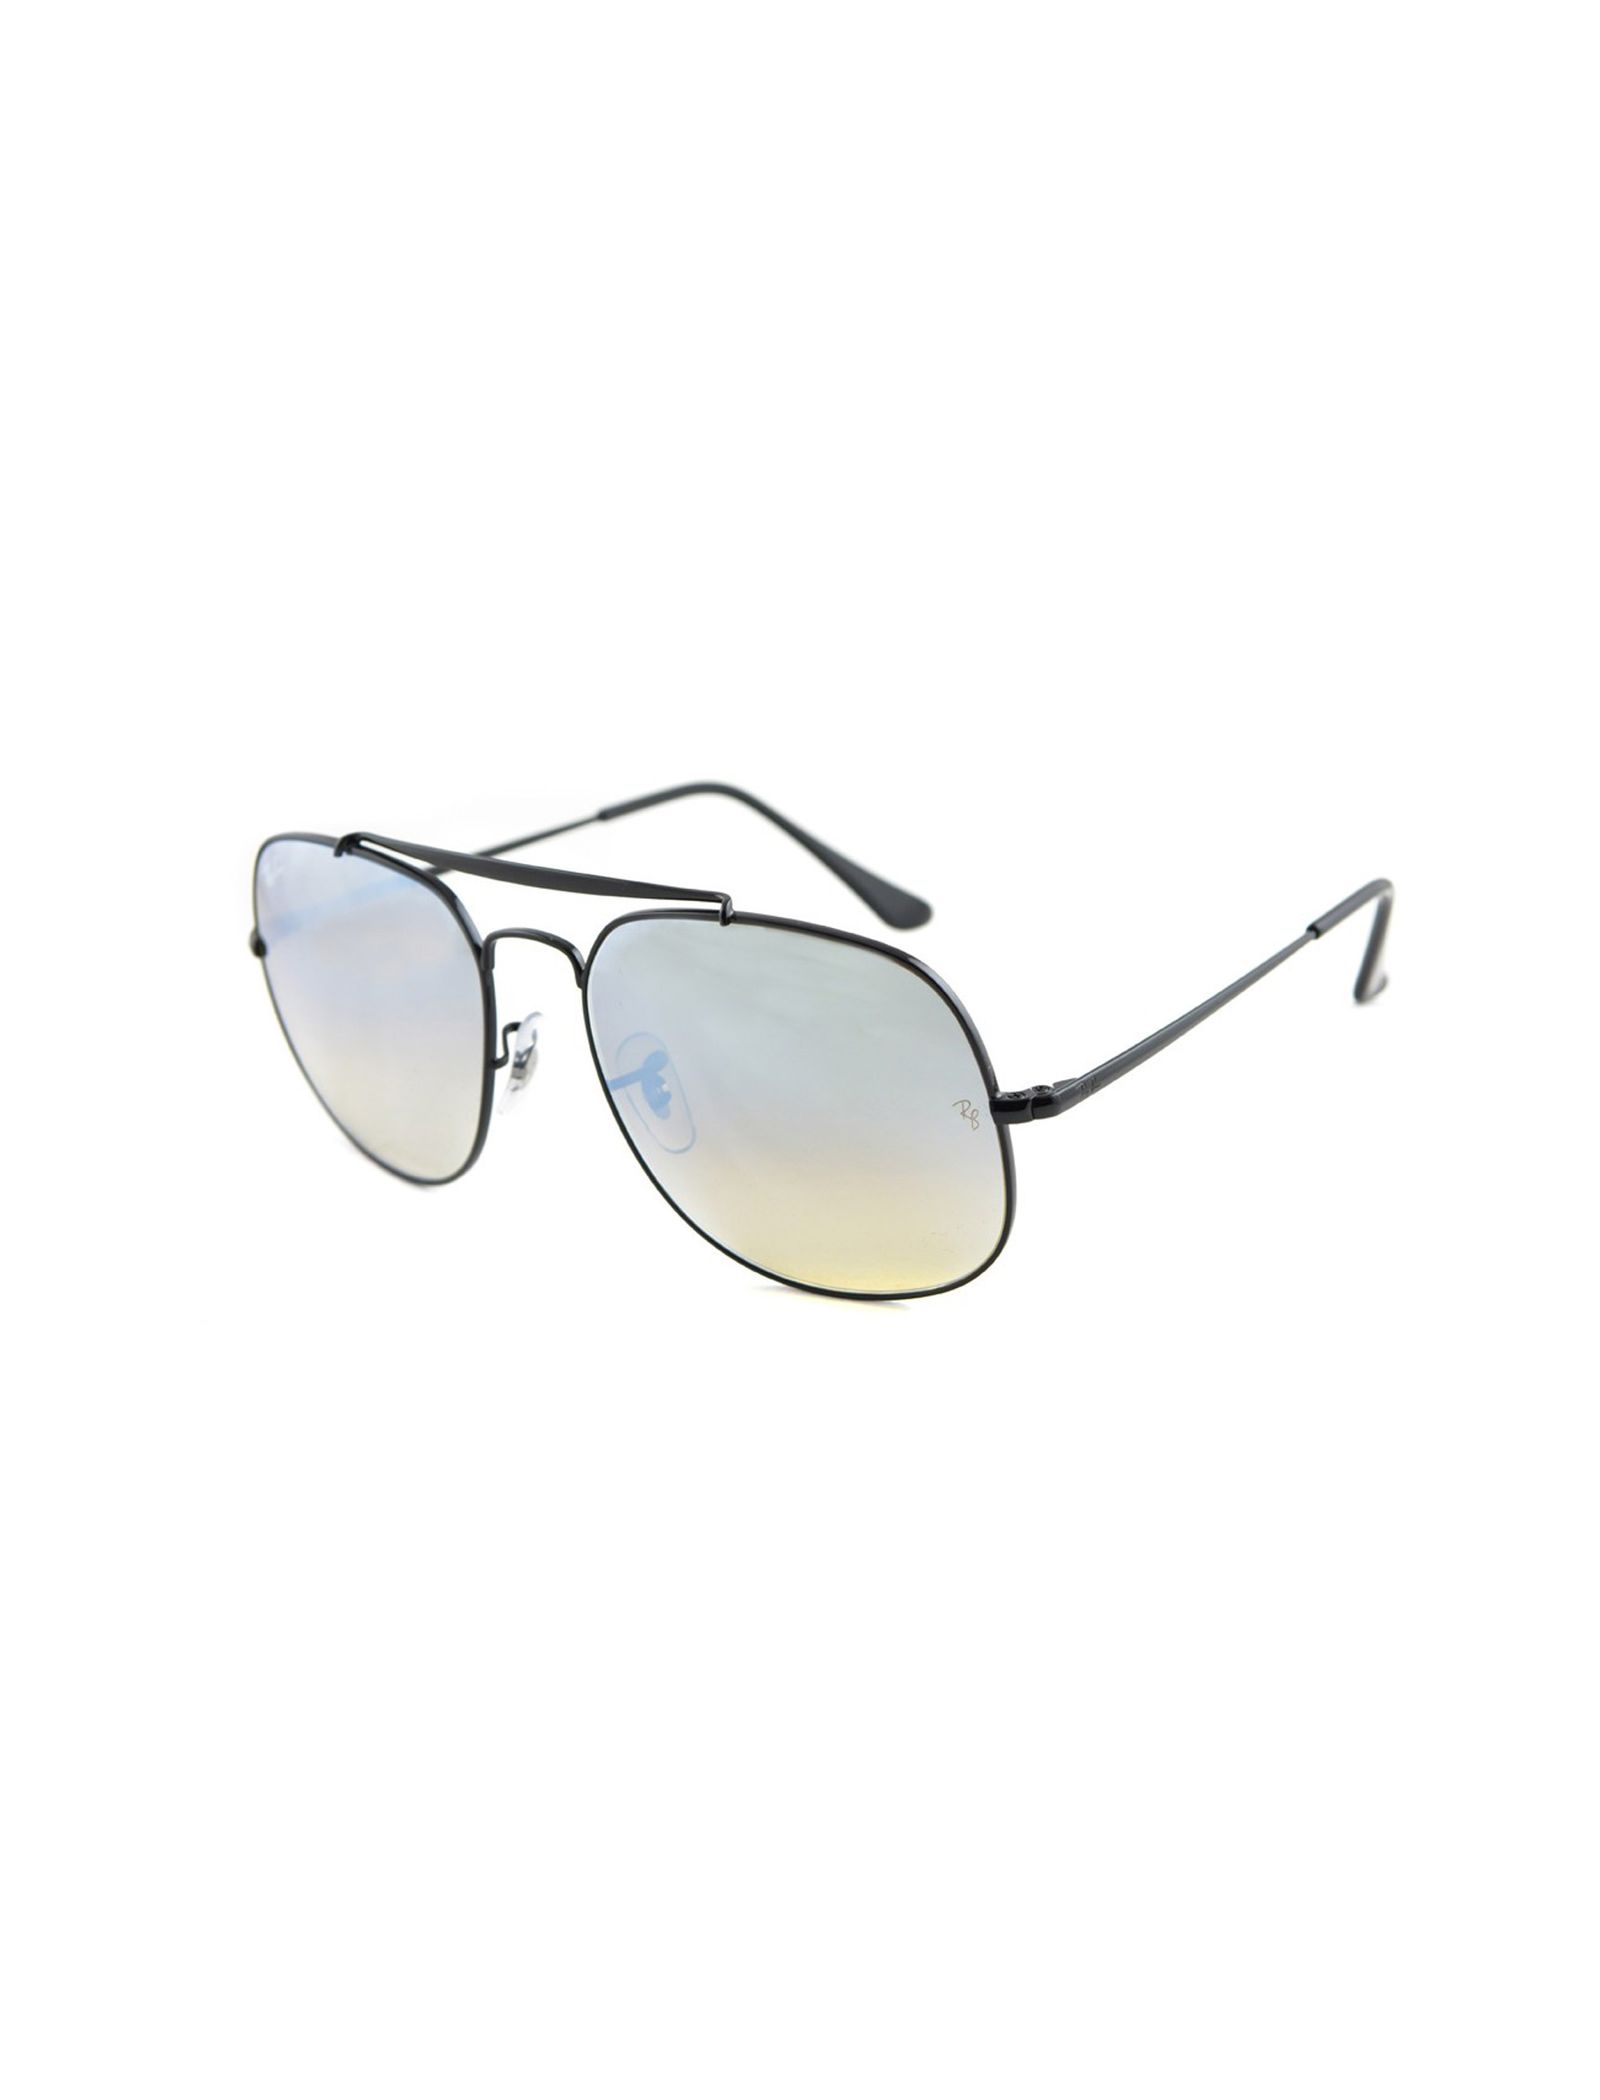 عینک آفتابی مردانه ری بن مدل 3561-002/9U - مشکی - 4